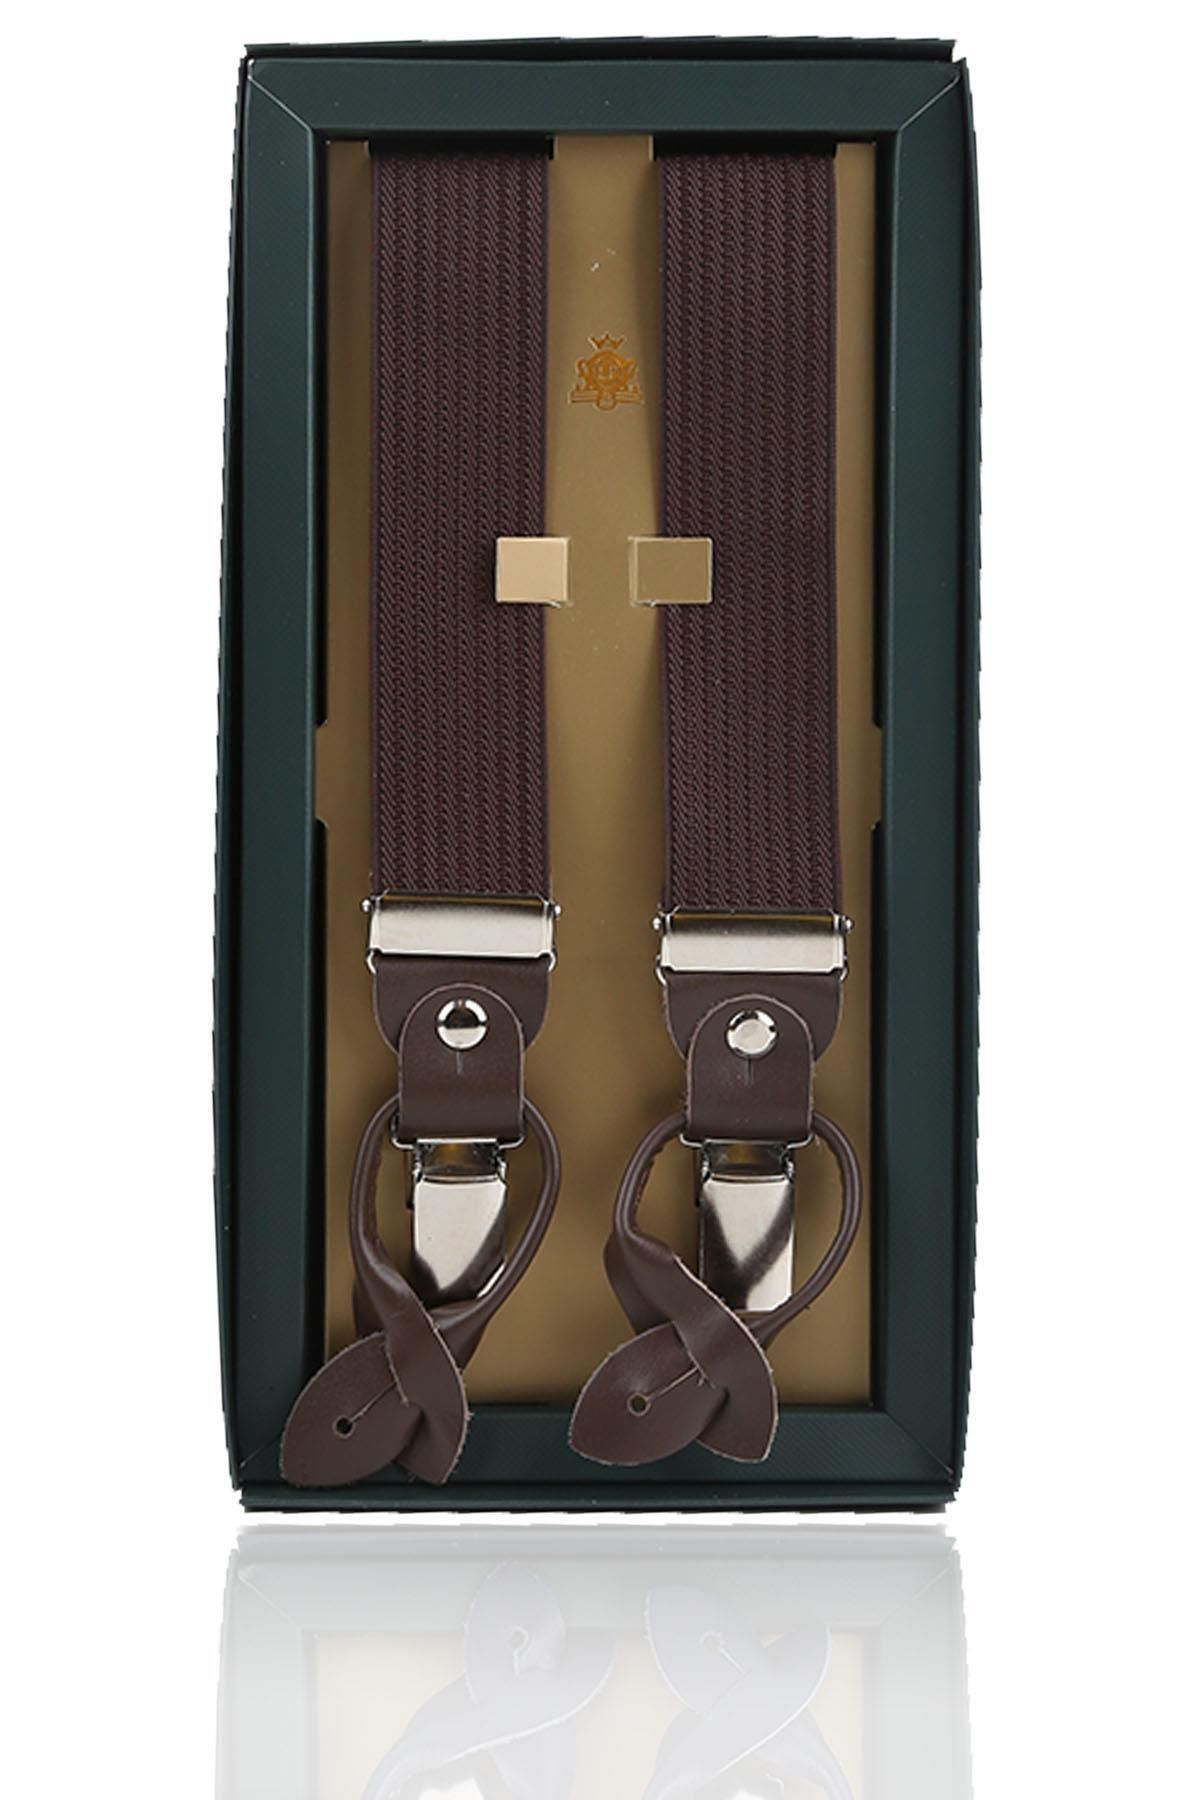 Kravatkolik Kahverengi Deri Bağlantılı Düğme Delikli Jakarlı Pantolon Askısı PAN168